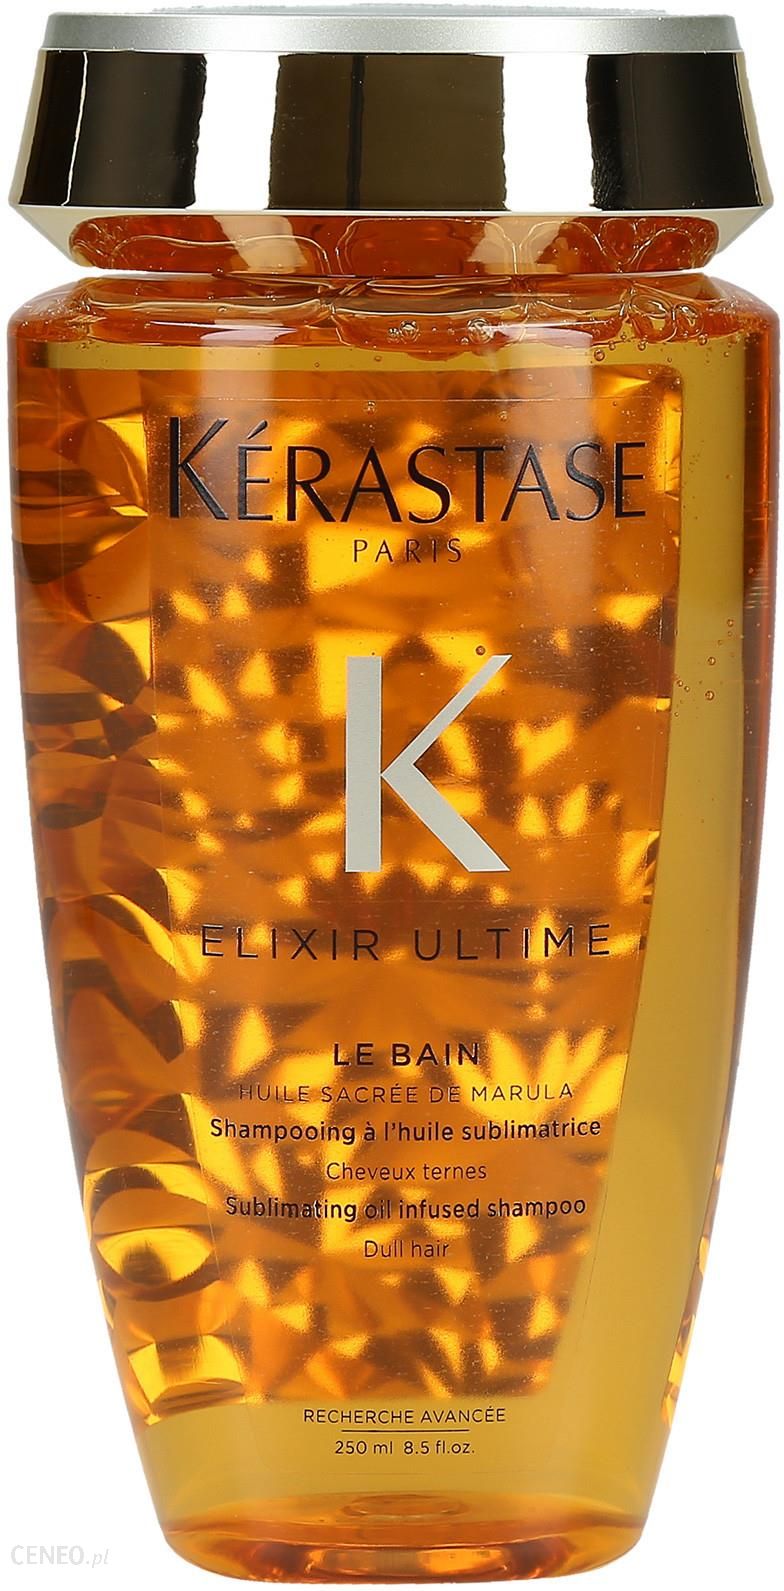 kerastase elixir ultime szampon z olejkami 250ml